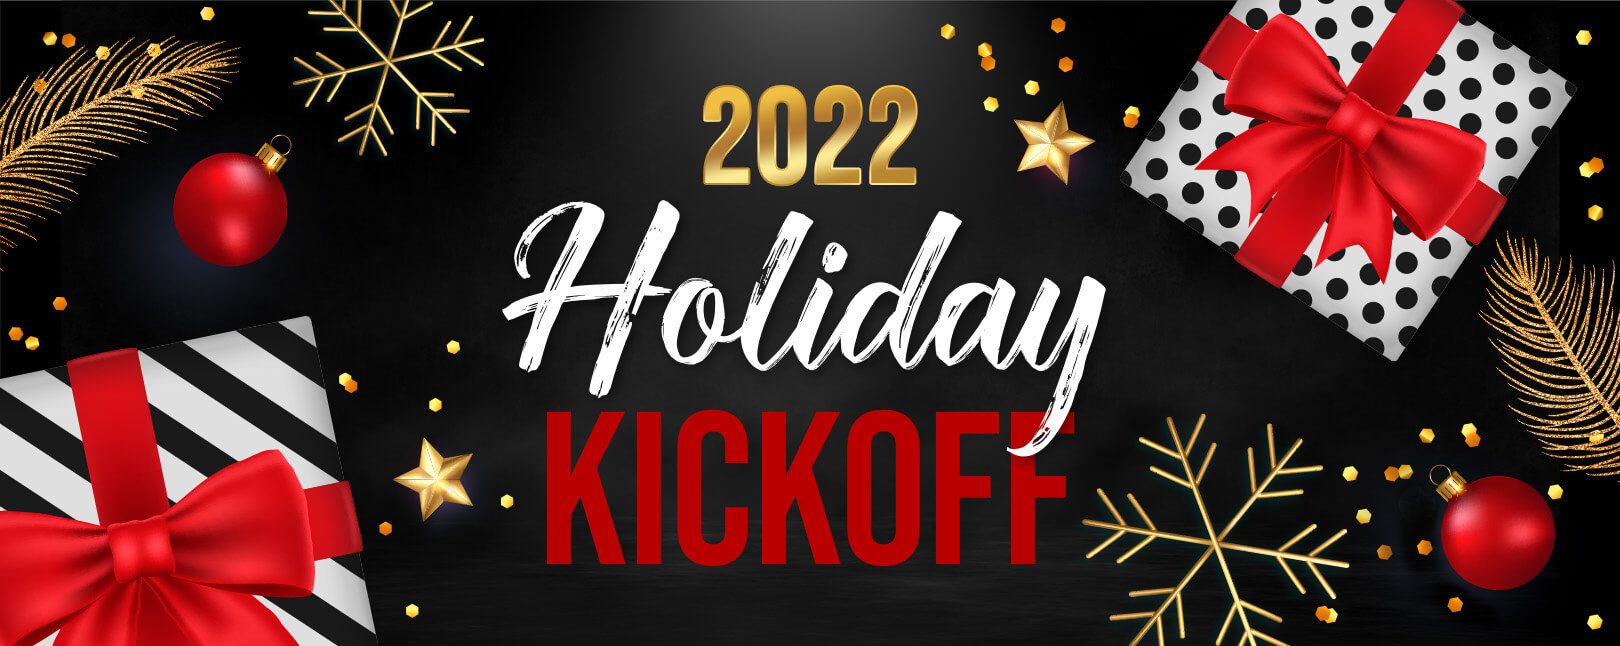 2022 Holiday Kickoff